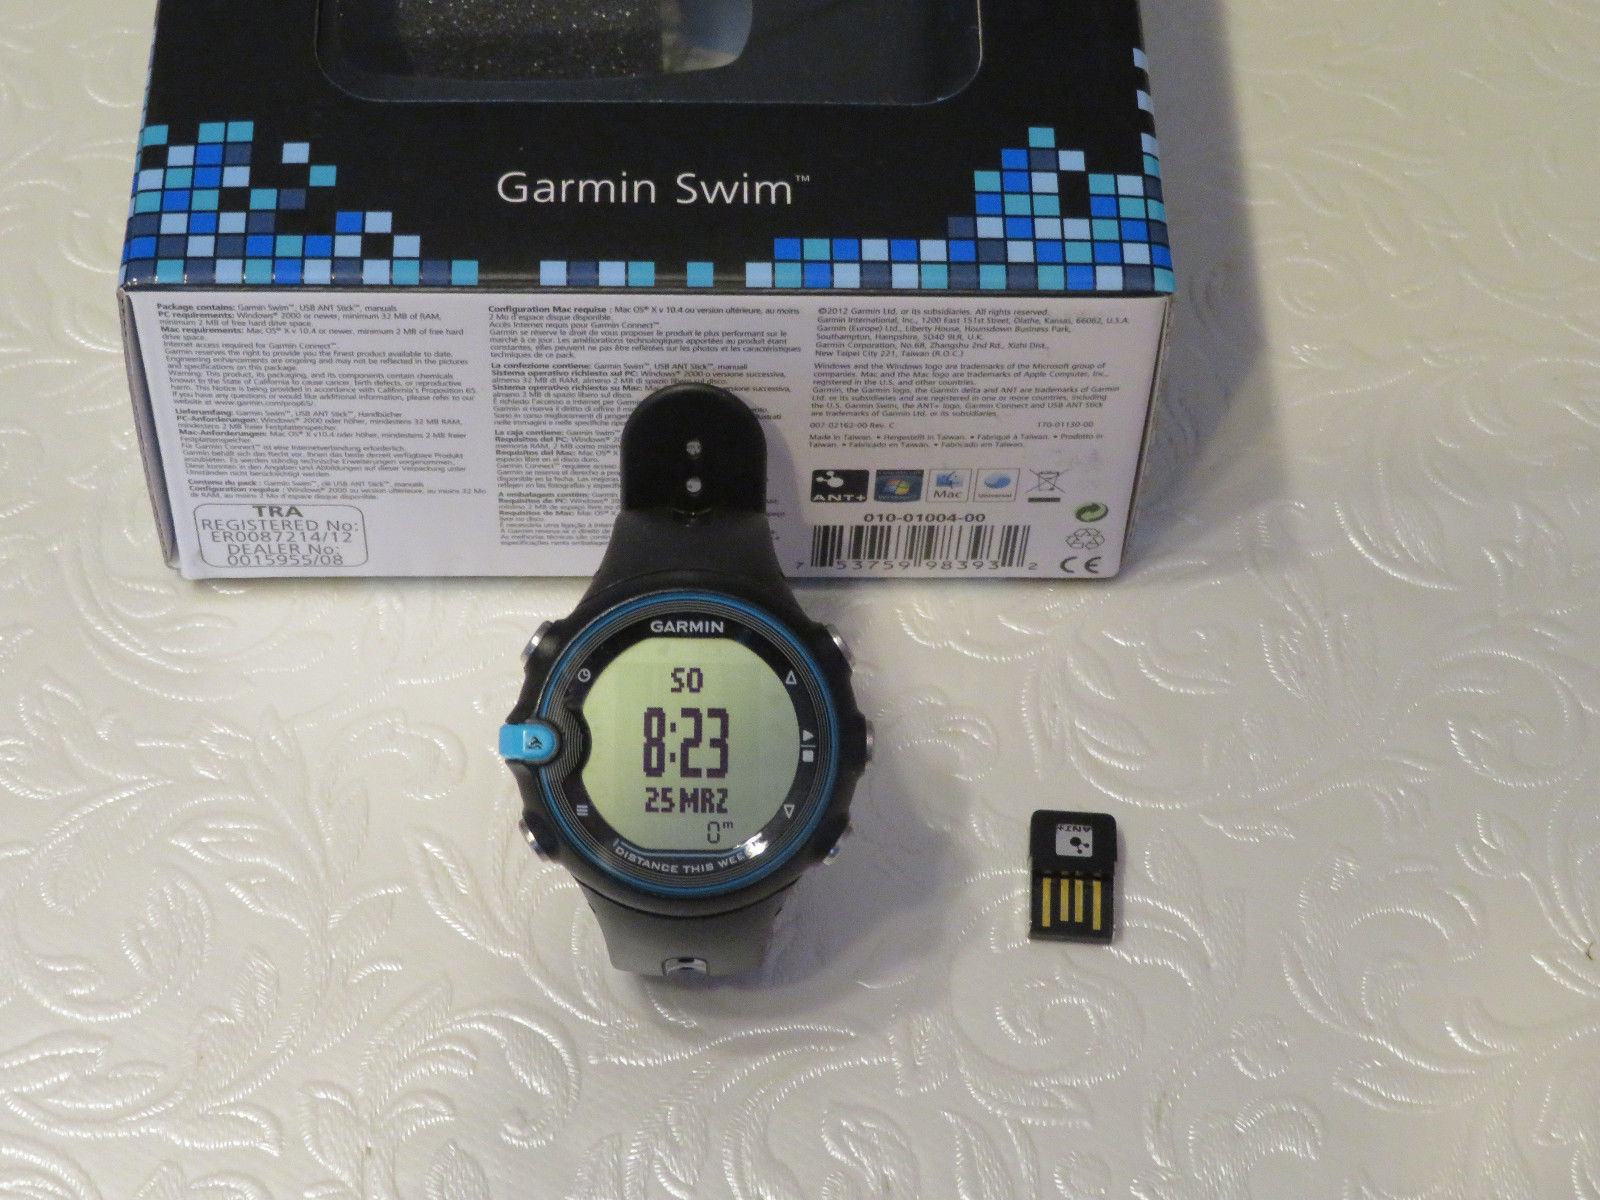 Garmin Swim Schwimm-Uhr, gebraucht, inklusive ANT+ USB-Dongle